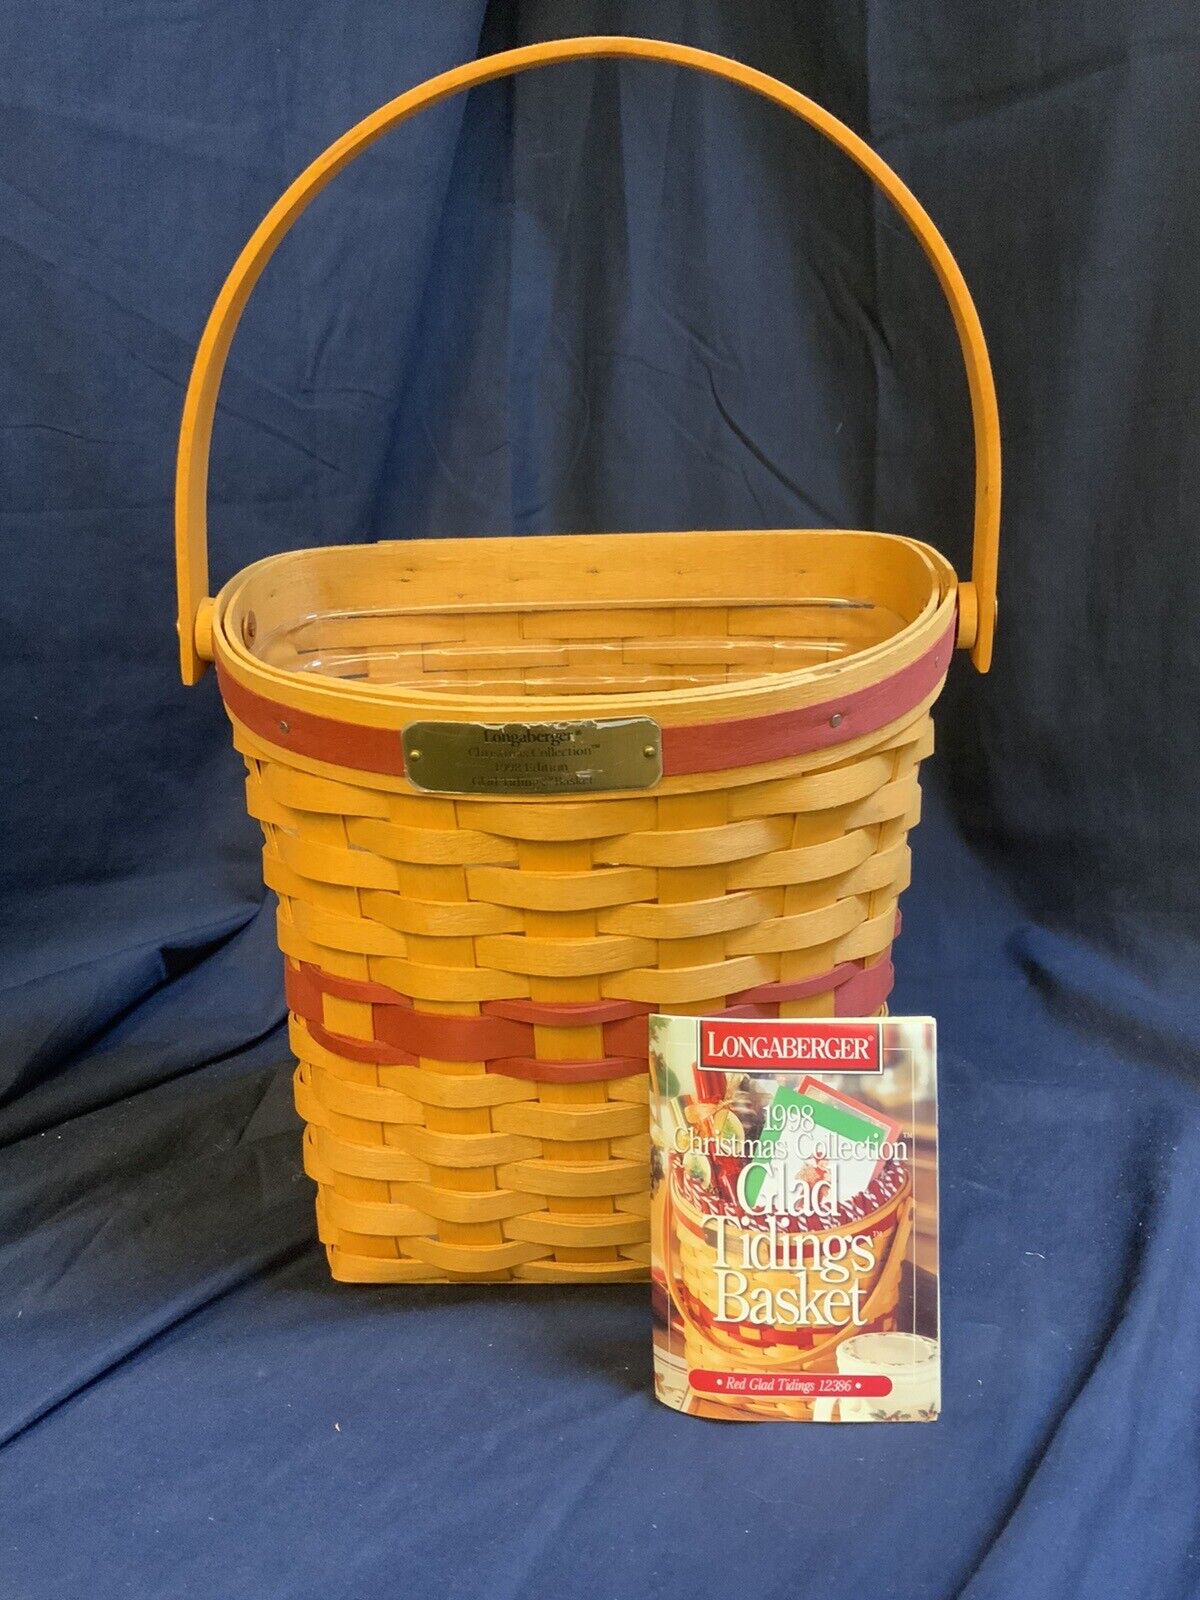 Vintage Longaberger Hanging Red Glad Tidings Basket 1998 Christmas Collection